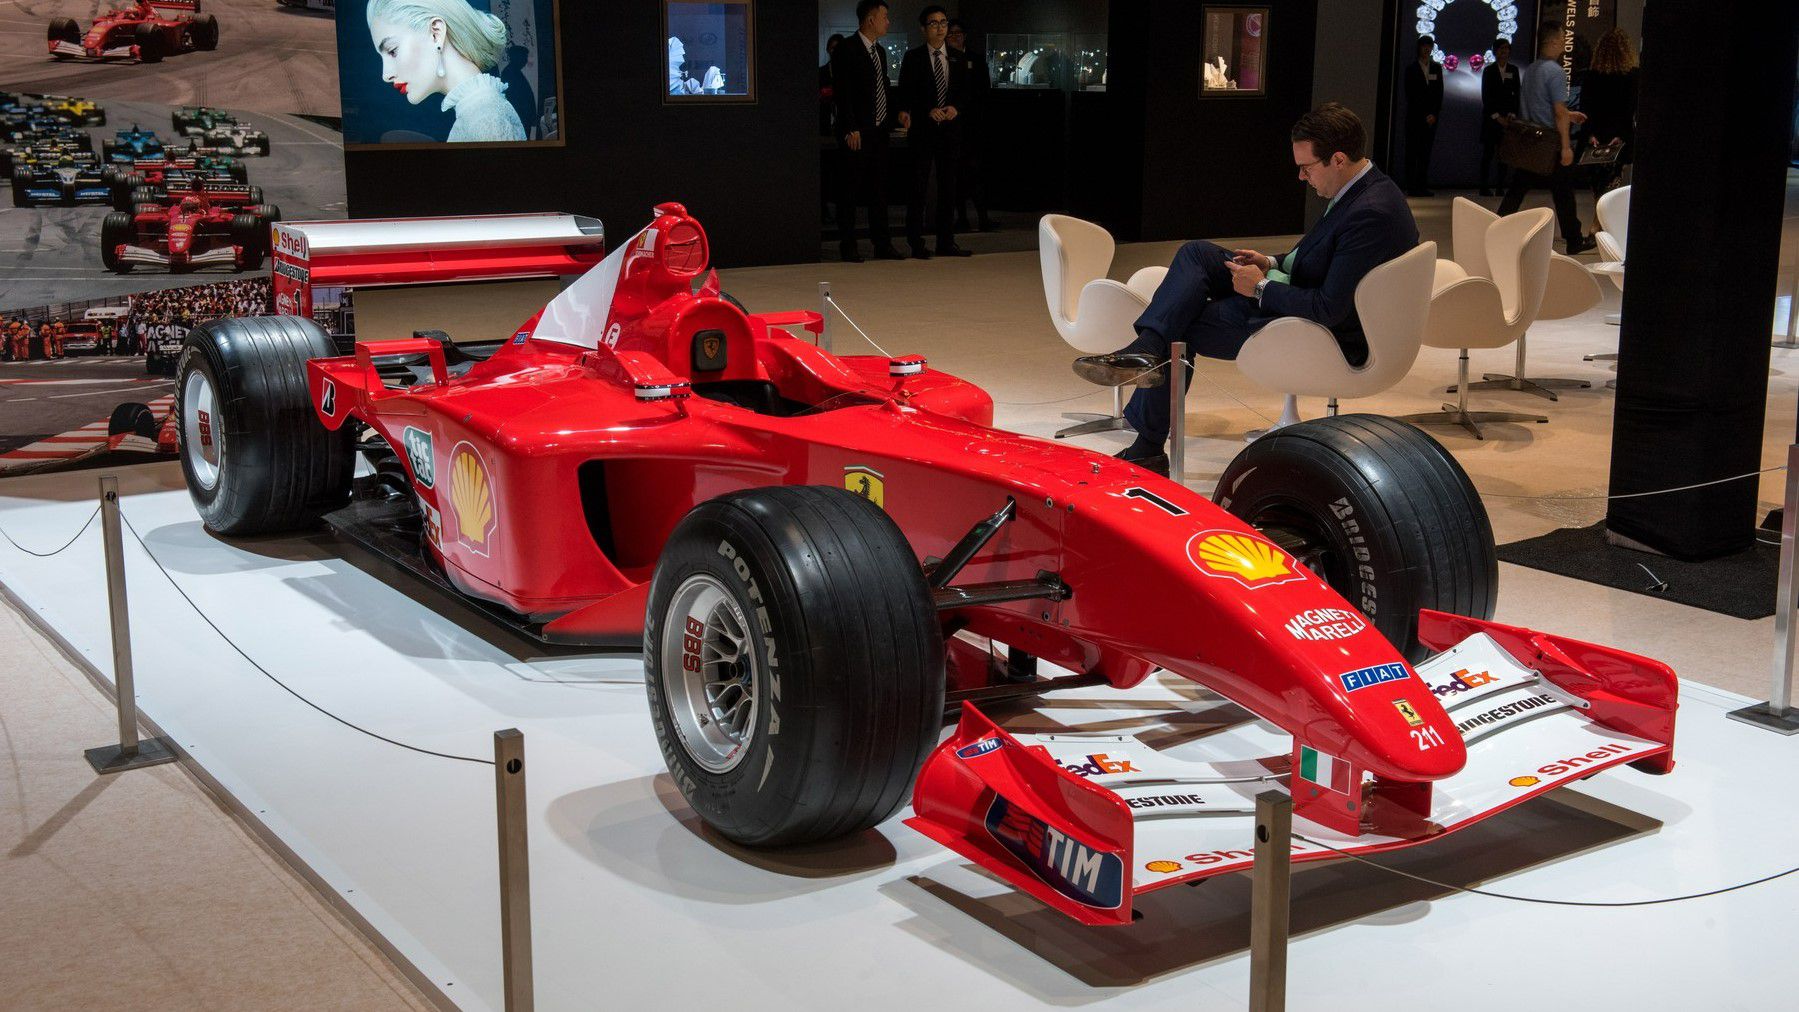 Rekordáron kelt el Schumacher 2003-as Ferrarija / Fotó: Profimedia